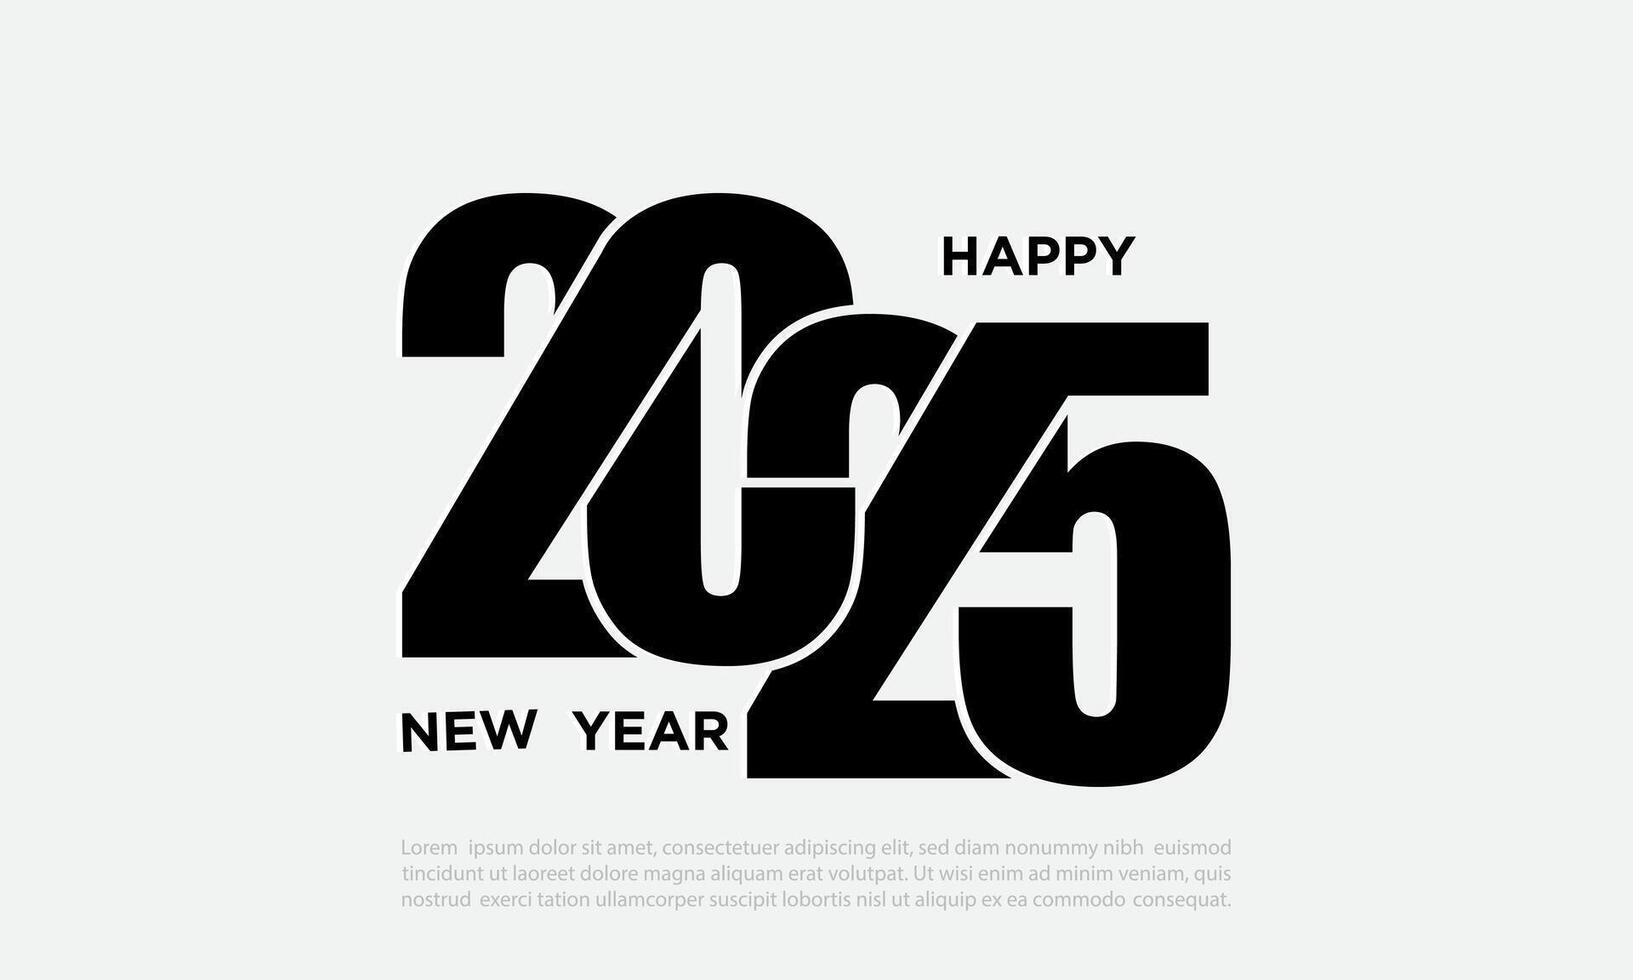 2025 contento nuevo año logo texto diseño. vector